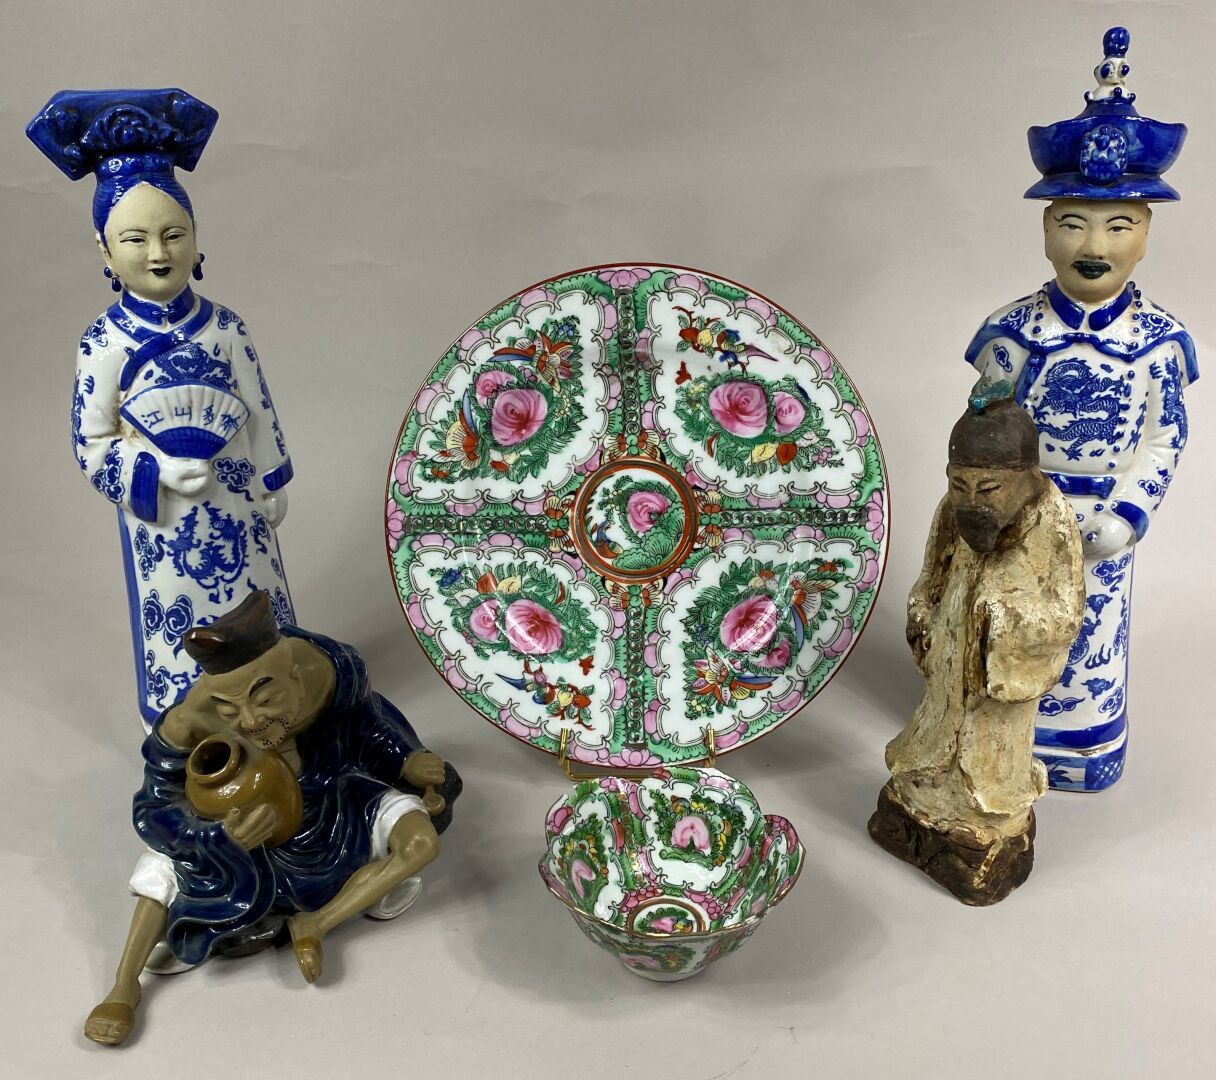 Null 中国，20世纪

一套珐琅彩陶器，包括。

- 一对青白珐琅的贵族，服装上有丰富的龙纹装饰

- 绘有牡丹和叶子的广州式盘子和碗

- 蓝、赭、白三色&hellip;